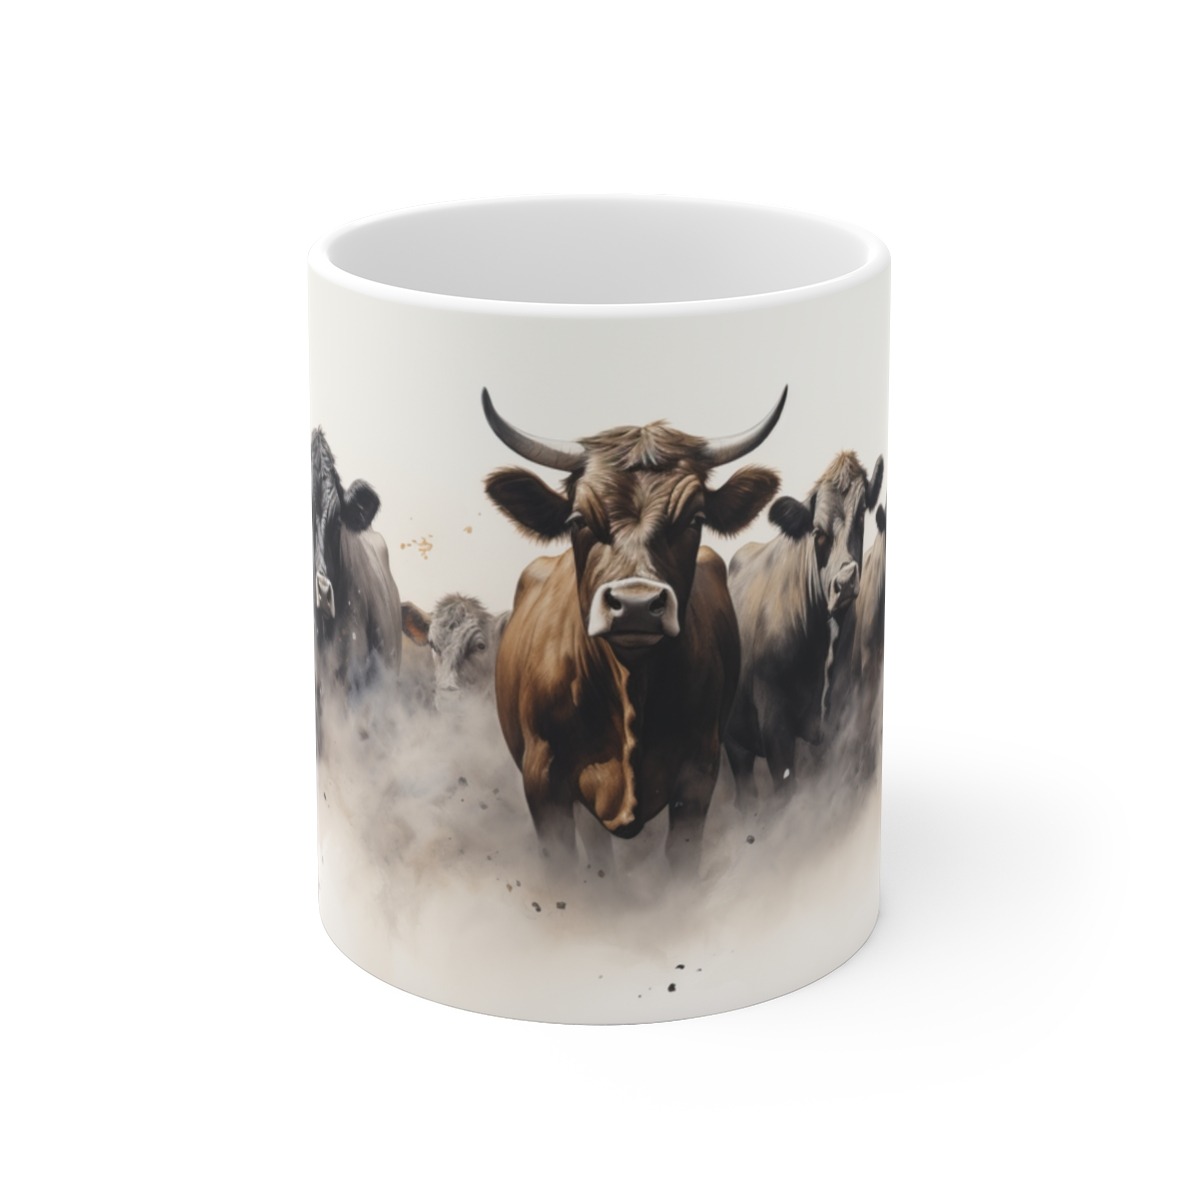 Weiße Keramik Tasse - Rinder und Kühe im Aquarell Stil